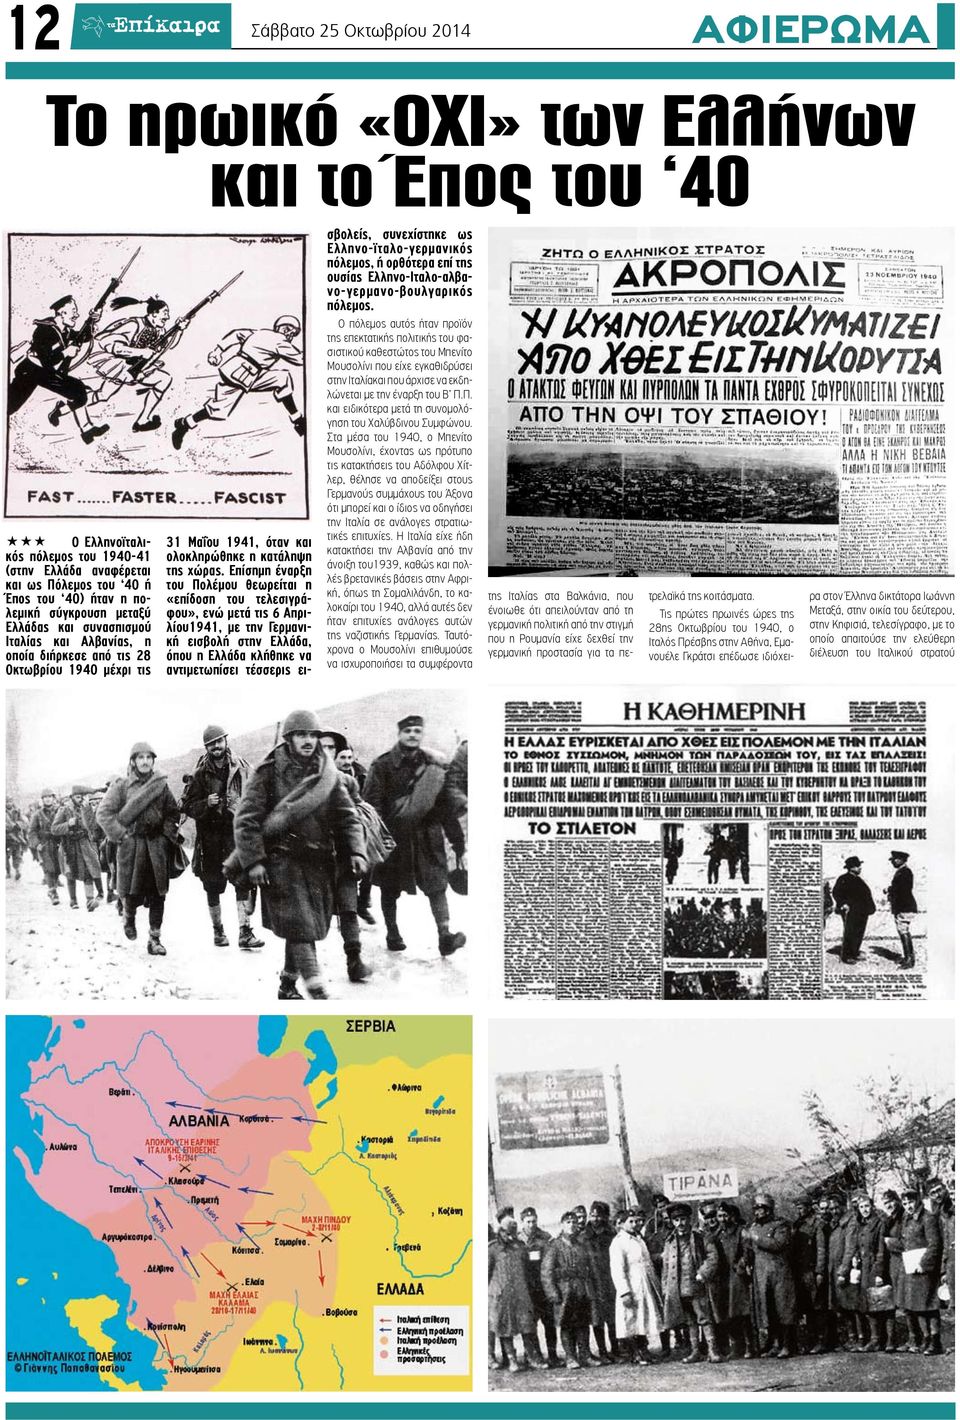 Επίσημη έναρξη του Πολέμου θεωρείται η «επίδοση του τελεσιγράφου», ενώ μετά τις 6 Απριλίου1941, με την Γερμανική εισβολή στην Ελλάδα, όπου η Ελλάδα κλήθηκε να αντιμετωπίσει τέσσερις εισβολείς,